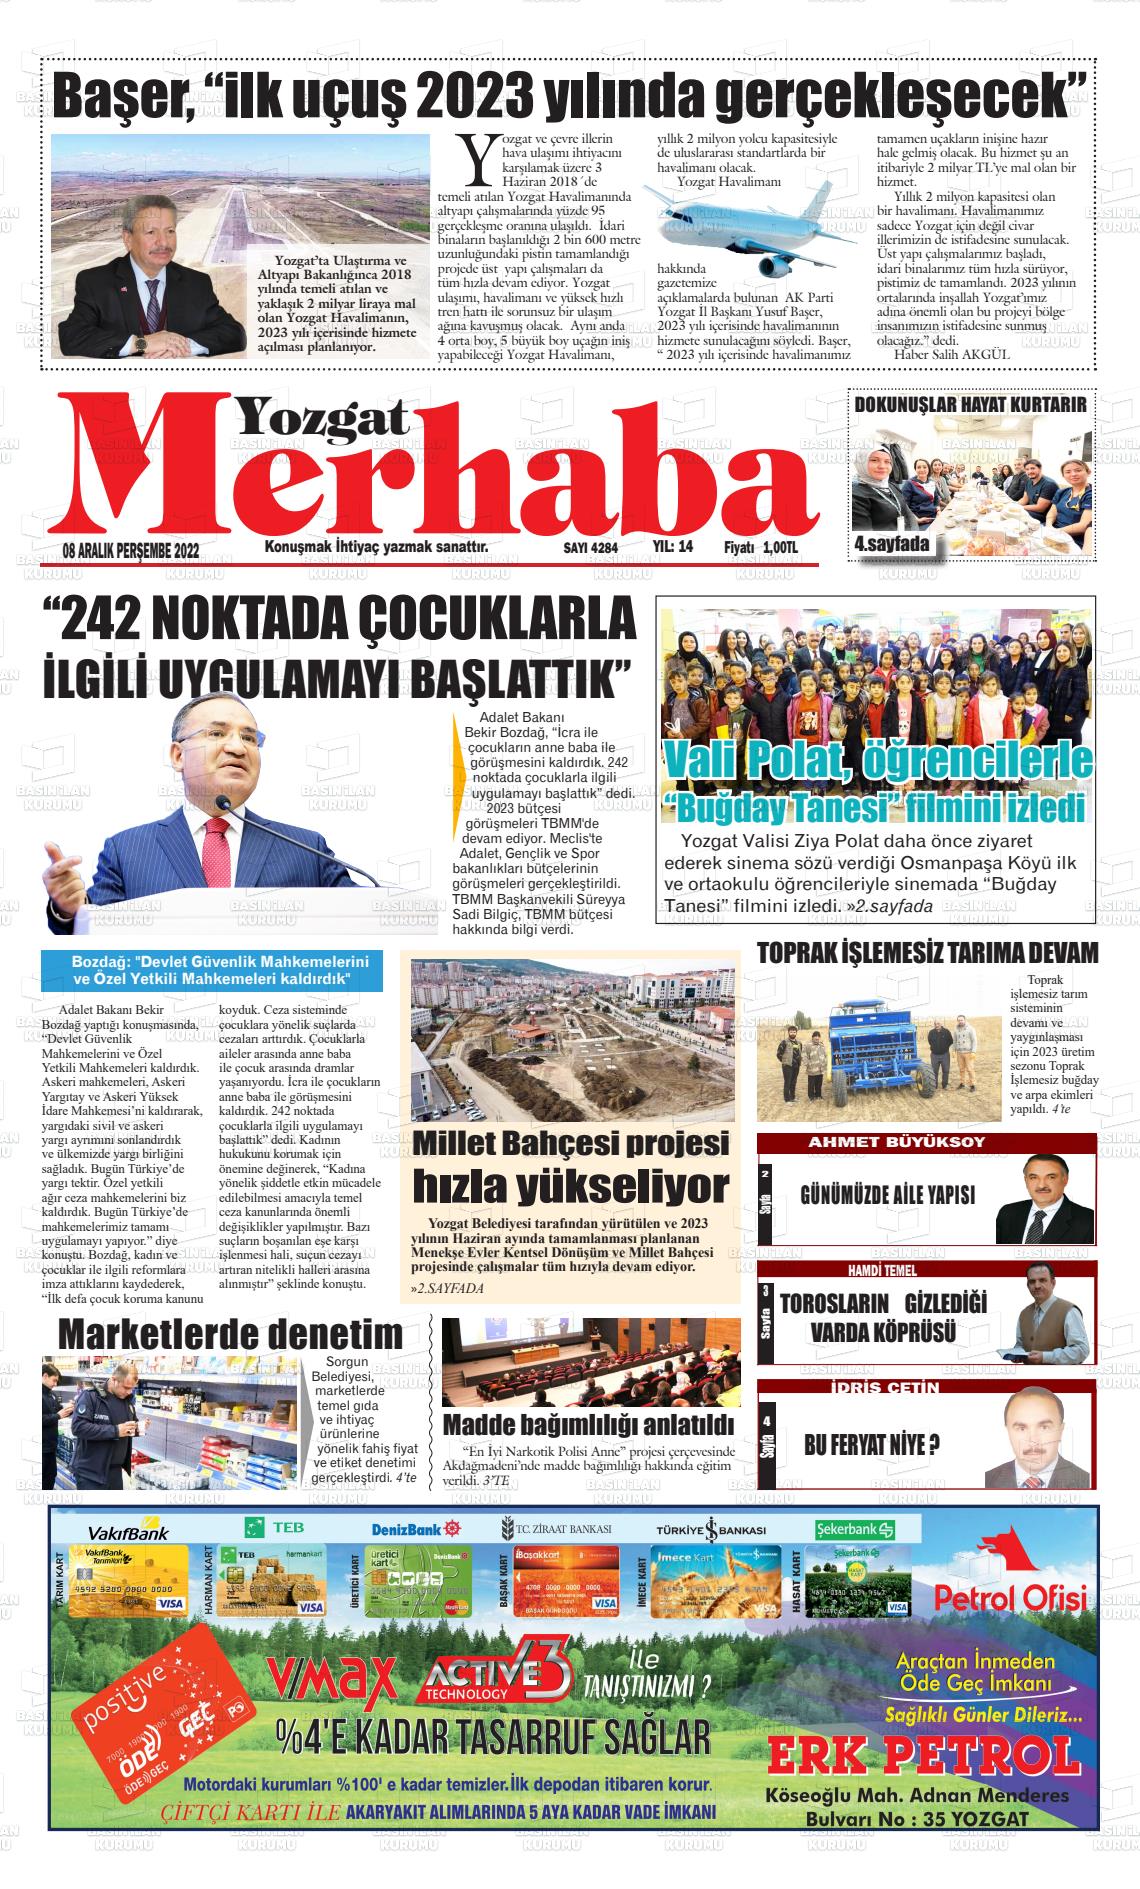 08 Aralık 2022 Merhaba Yozgat Gazete Manşeti